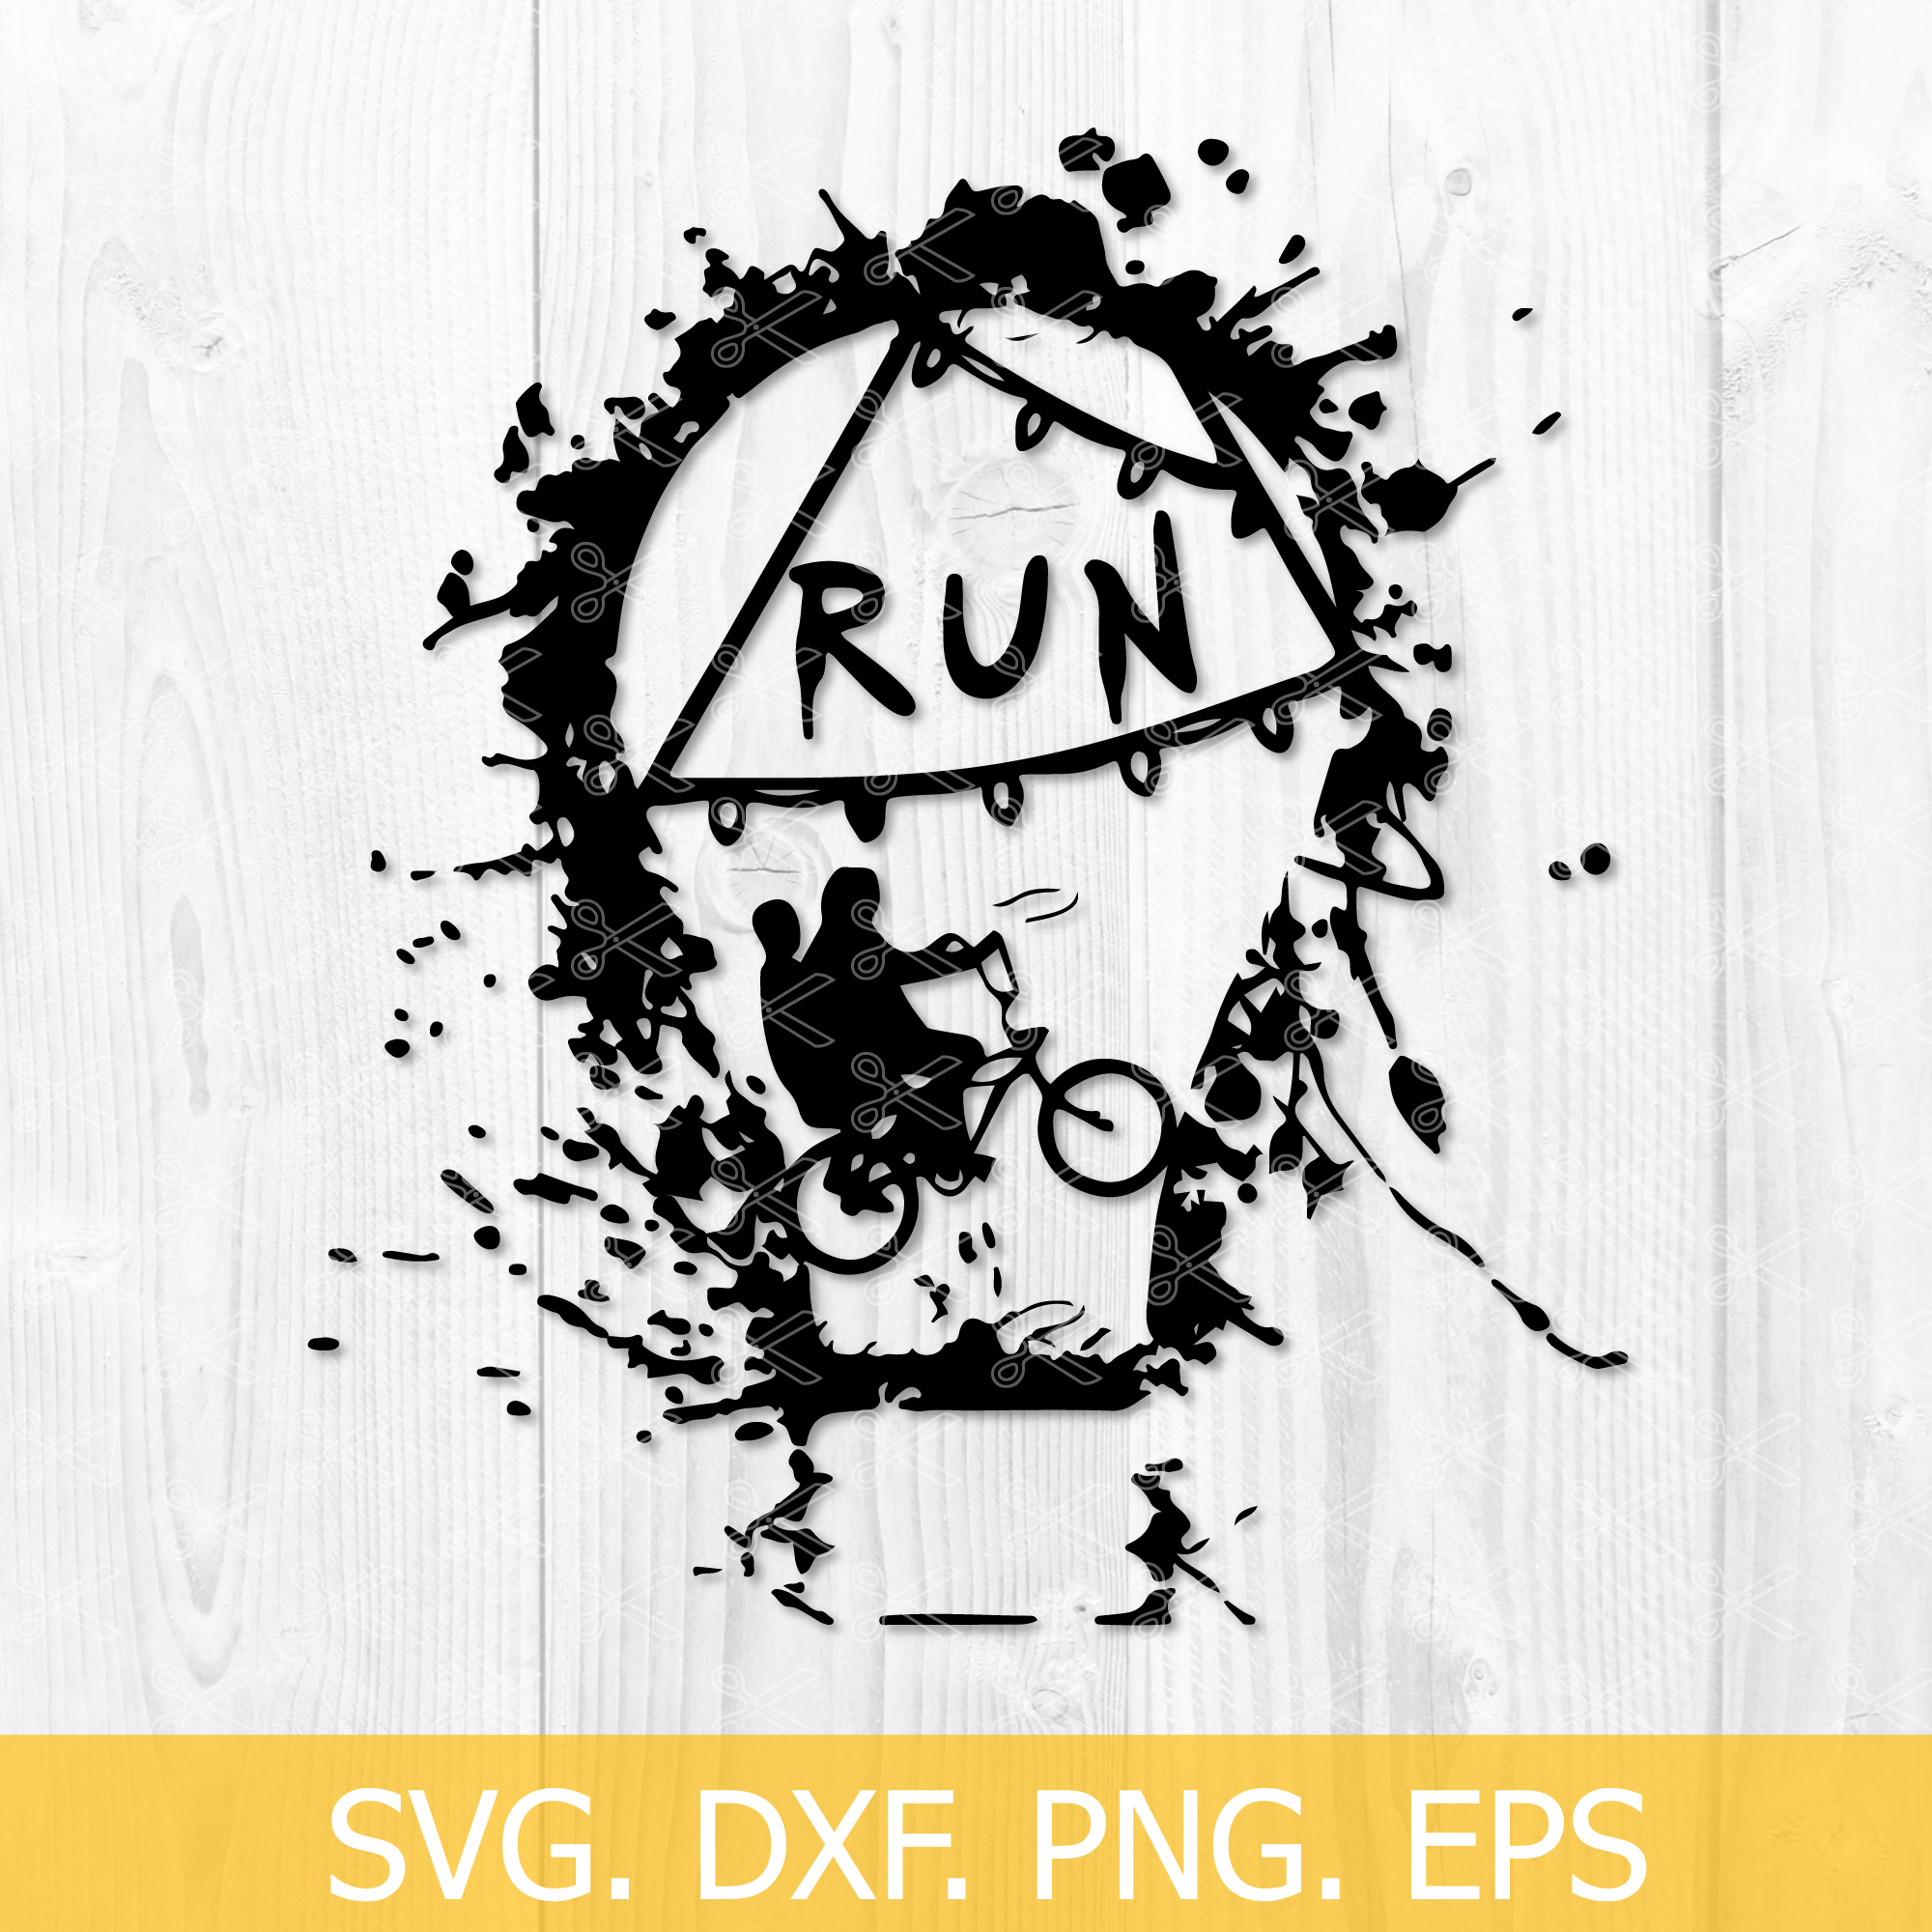 Stranger Things Shadow Box SVG - Free SVG Cut Files